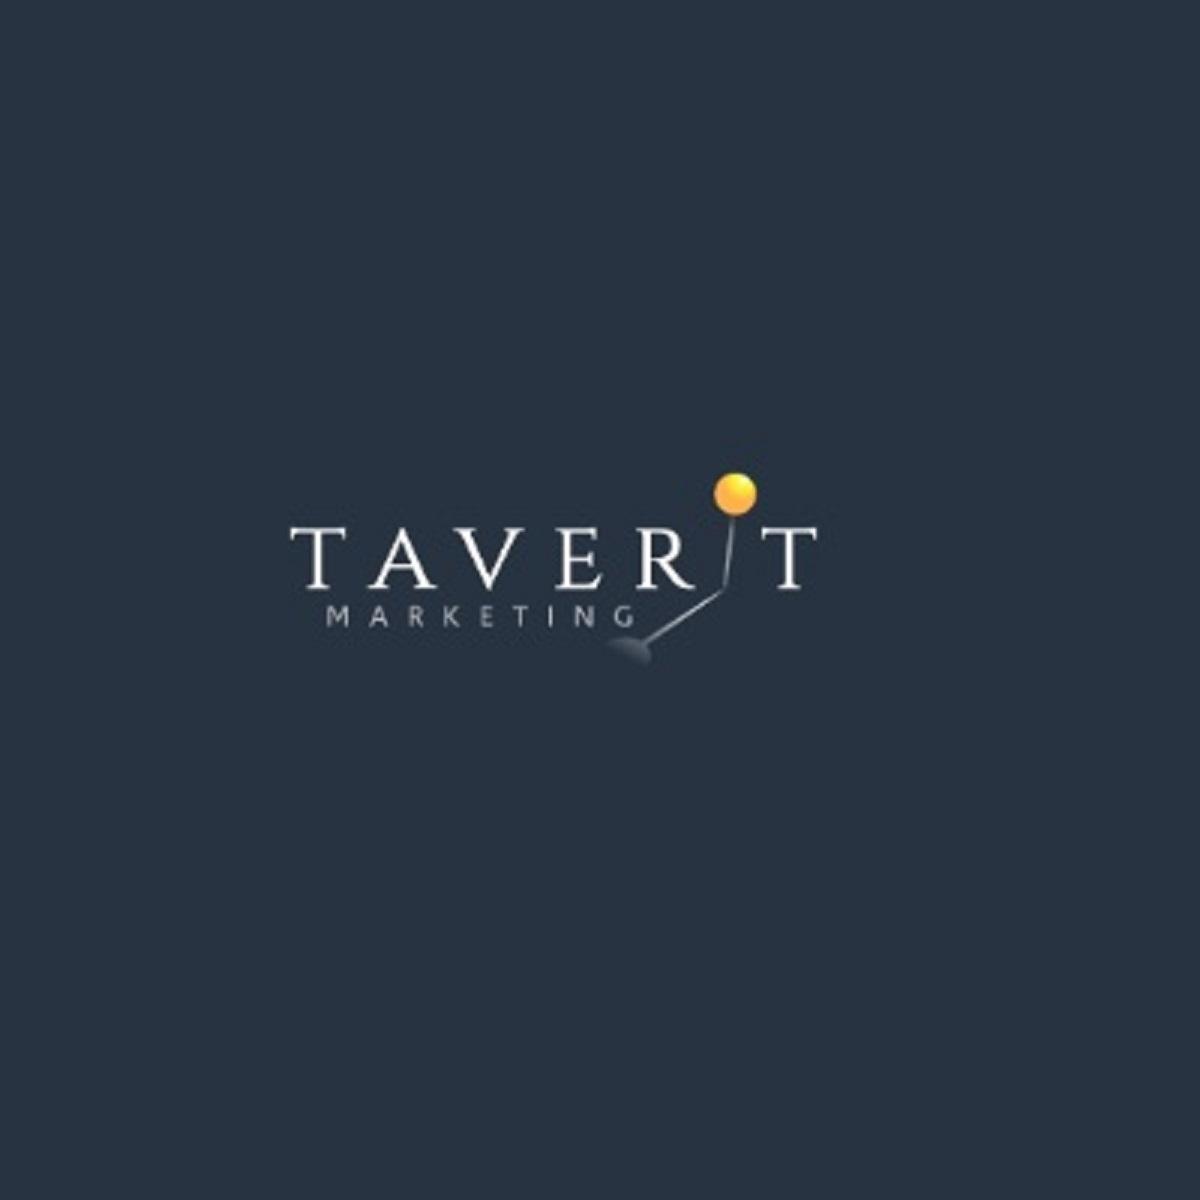 Taverit Marketing  Agency And SEO Company